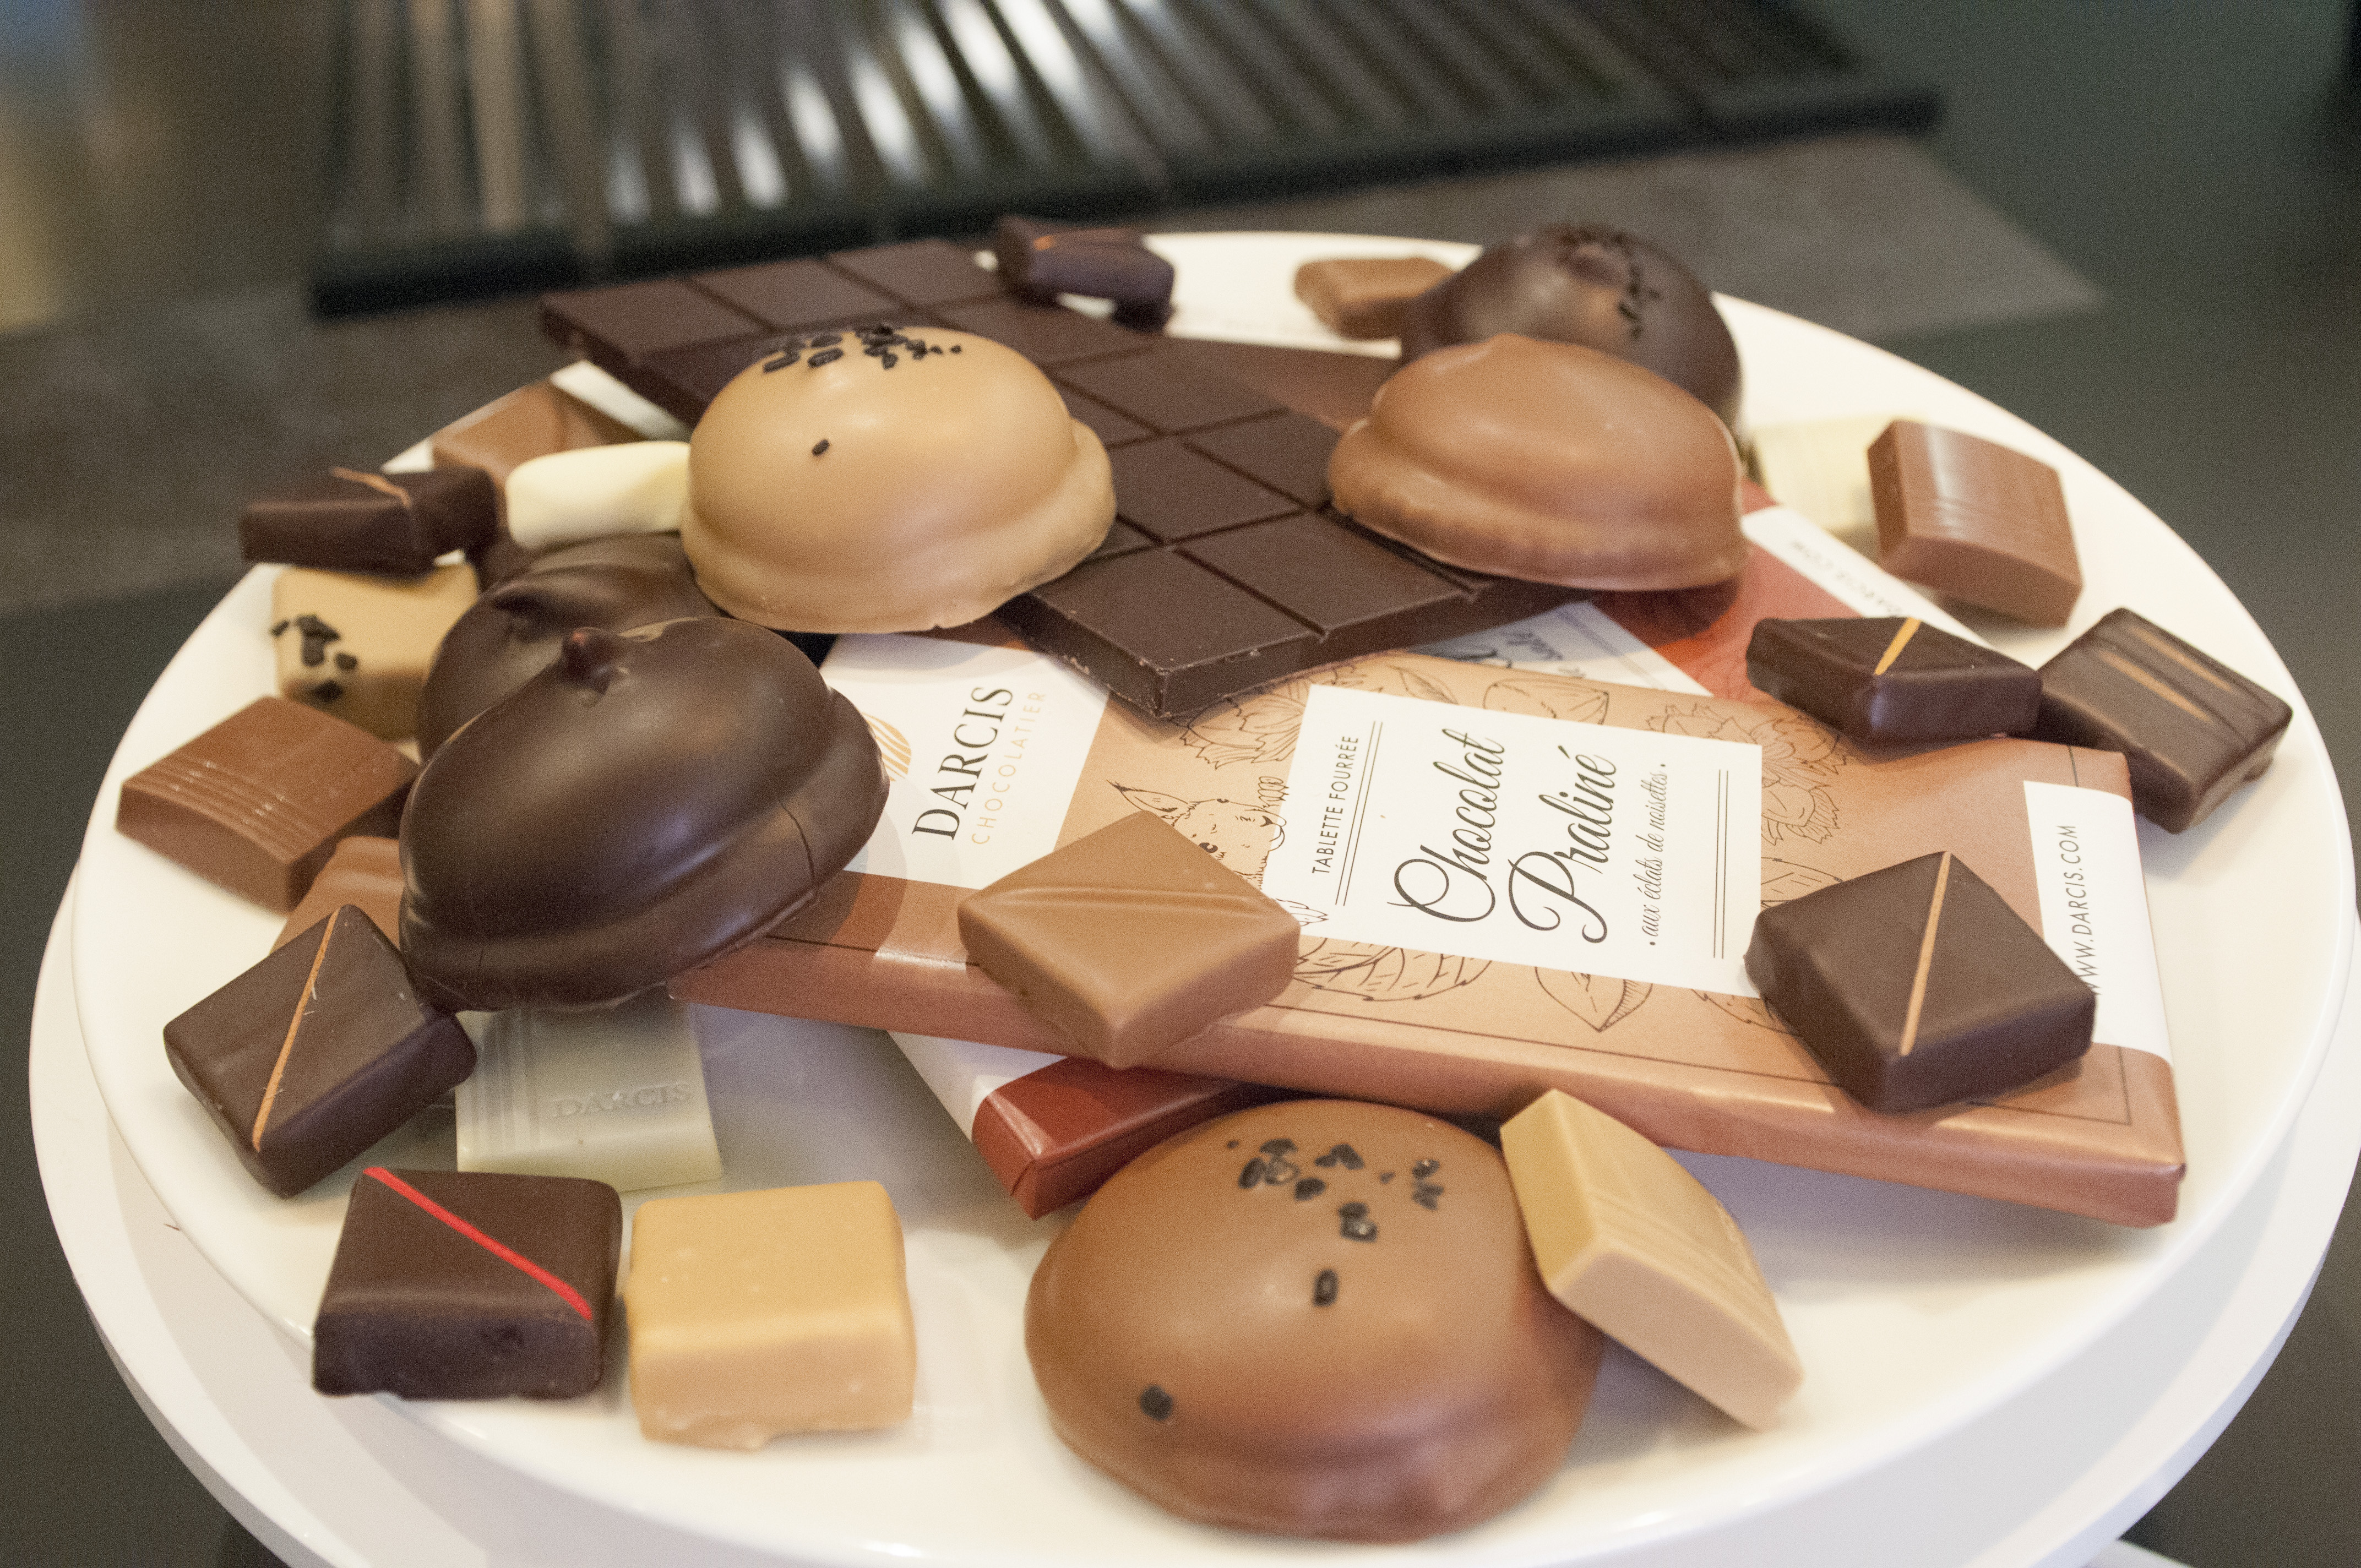 MUSÉE DU CHOCOLAT - Jean-Philippe Darcis, artisan pâtissier & chocolatier belge à Verviers